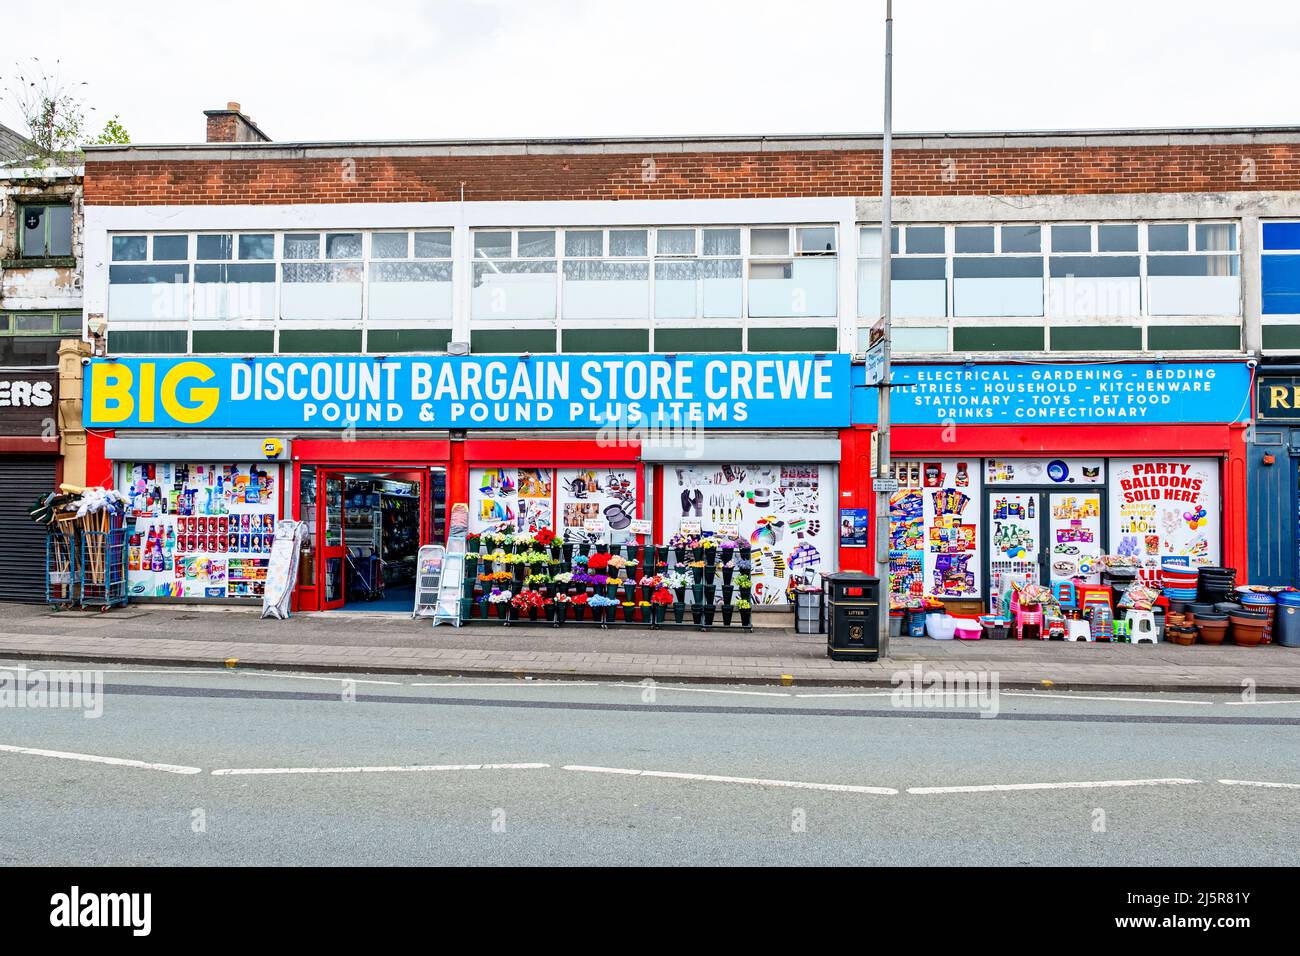 Big discount bargain store in Crewe Cheshire UK Stock Photo